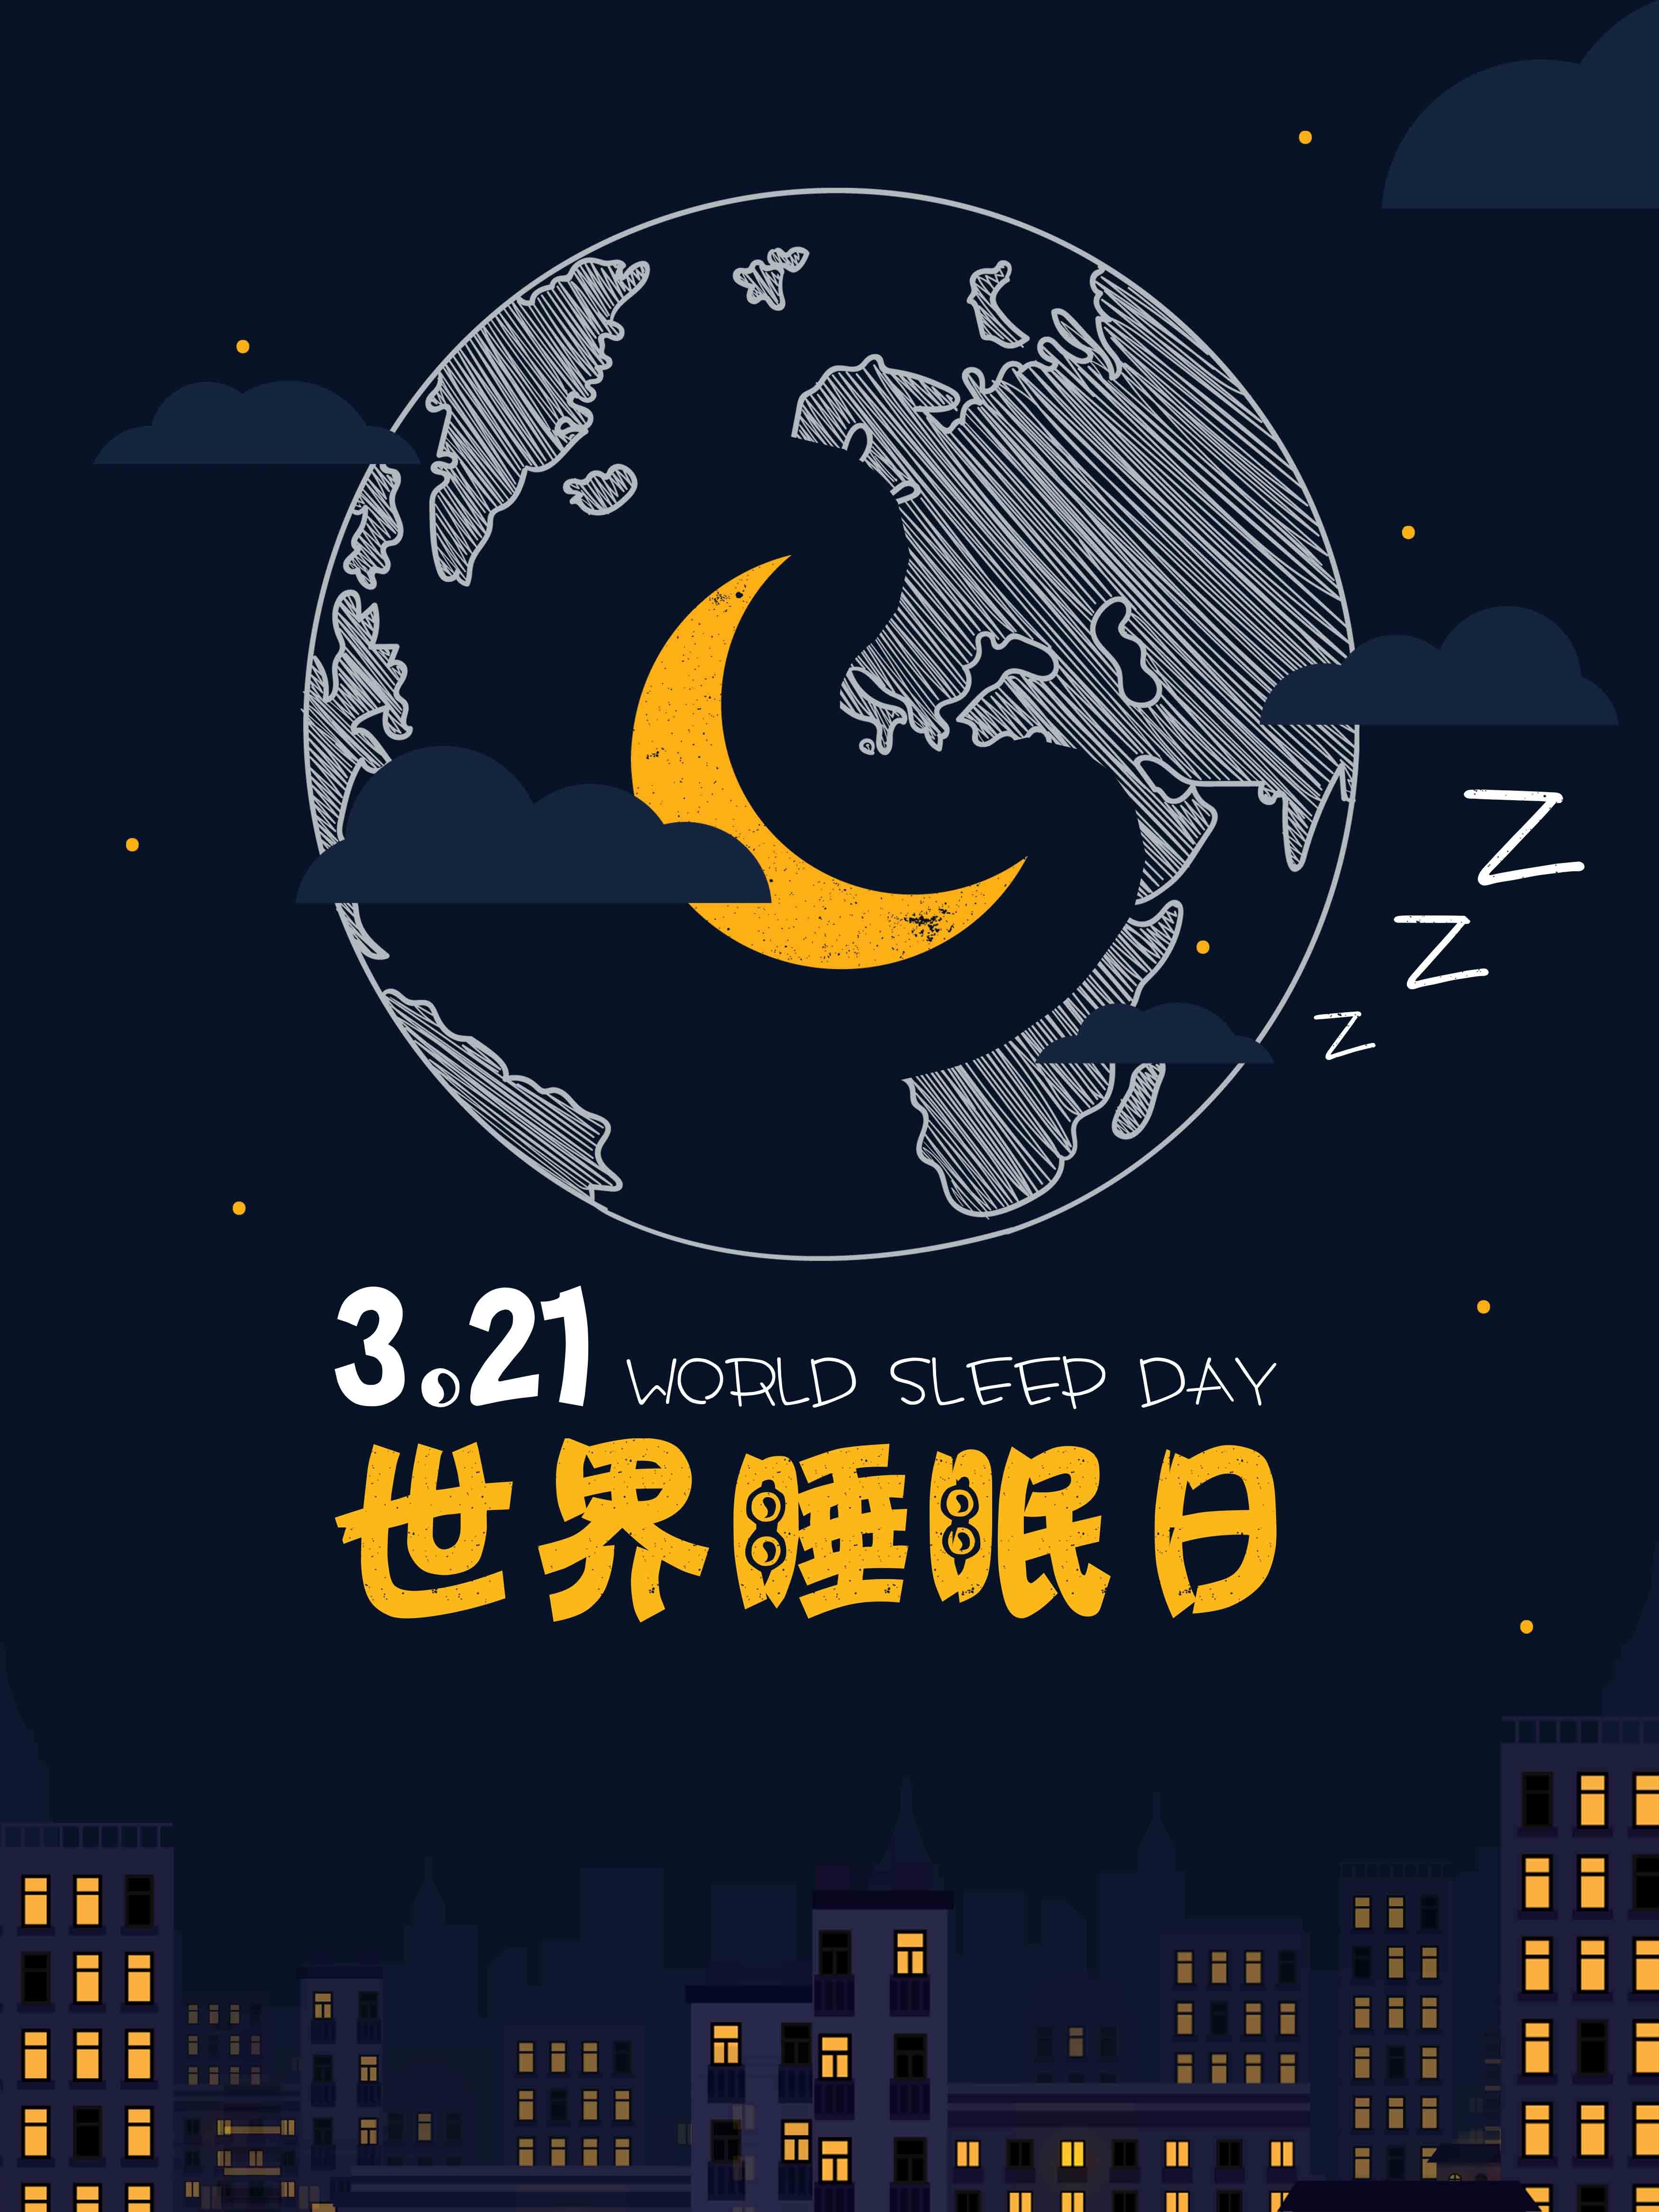 国际睡眠日宣传图片